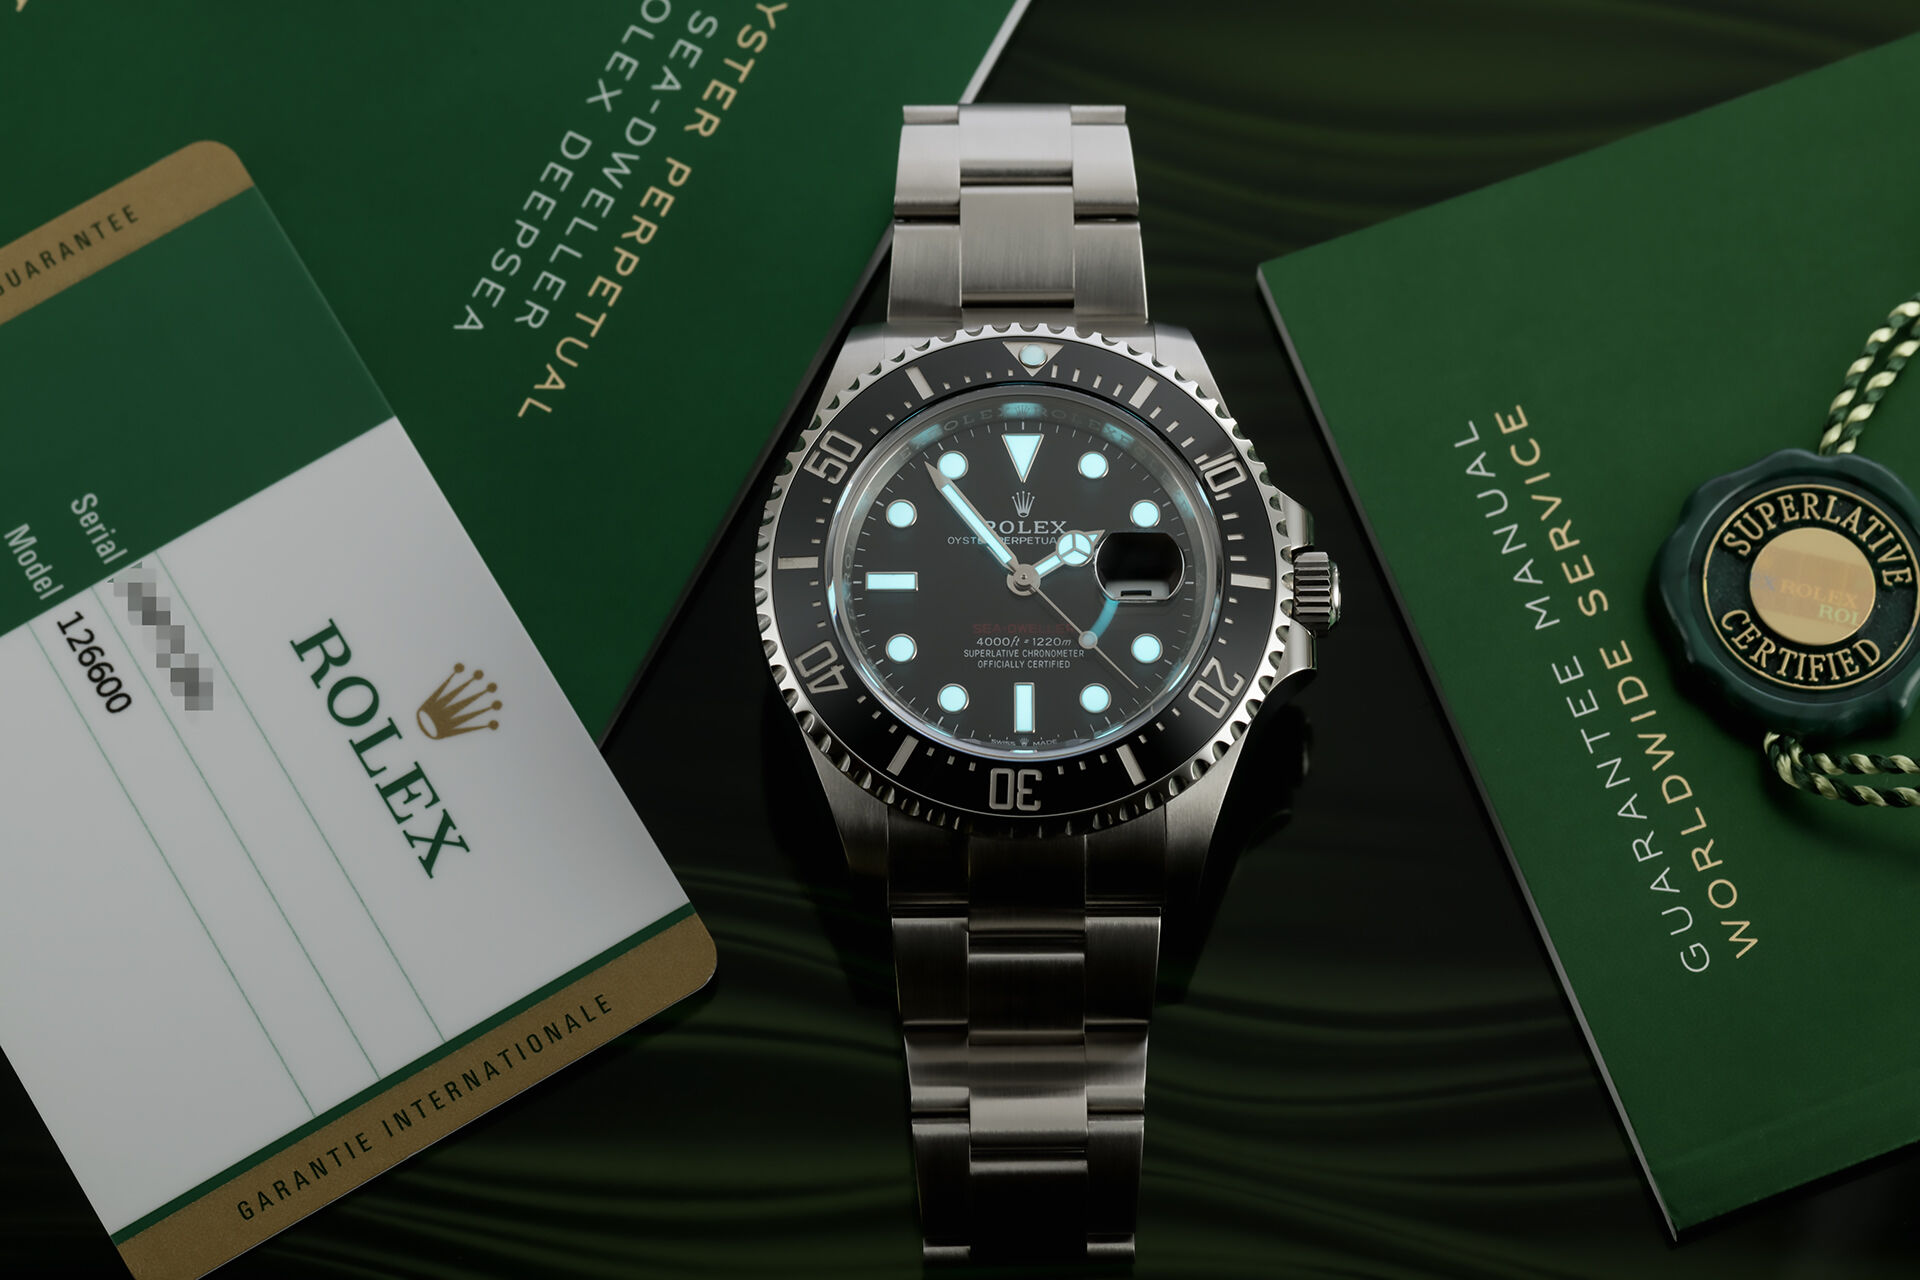 ref 126600 | 50th Anniversary Model | Rolex Sea-Dweller